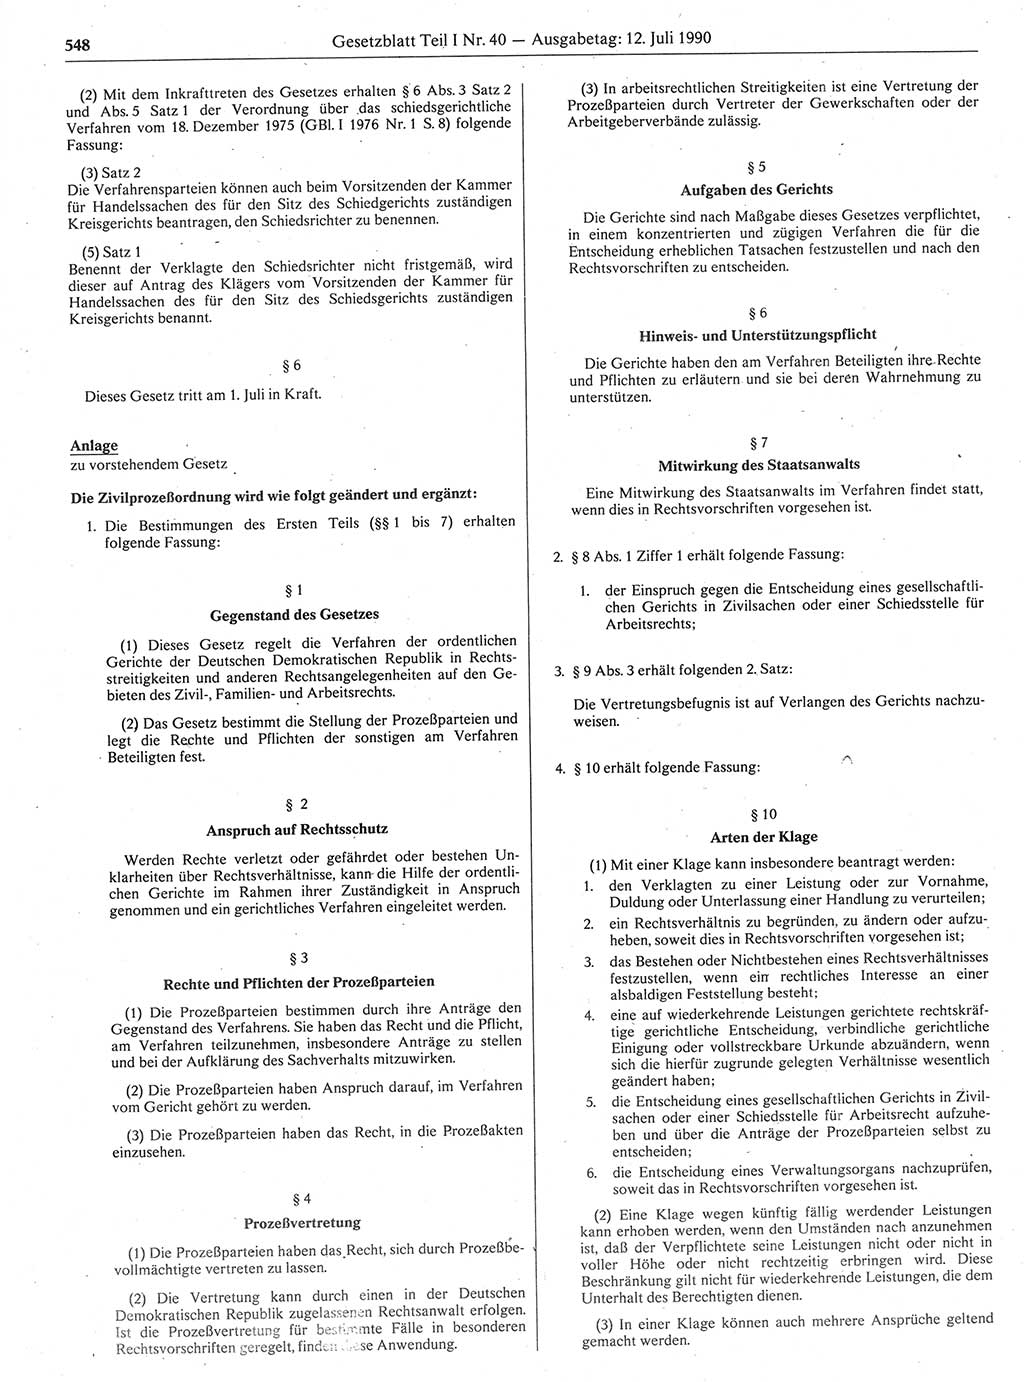 Gesetzblatt (GBl.) der Deutschen Demokratischen Republik (DDR) Teil Ⅰ 1990, Seite 548 (GBl. DDR Ⅰ 1990, S. 548)